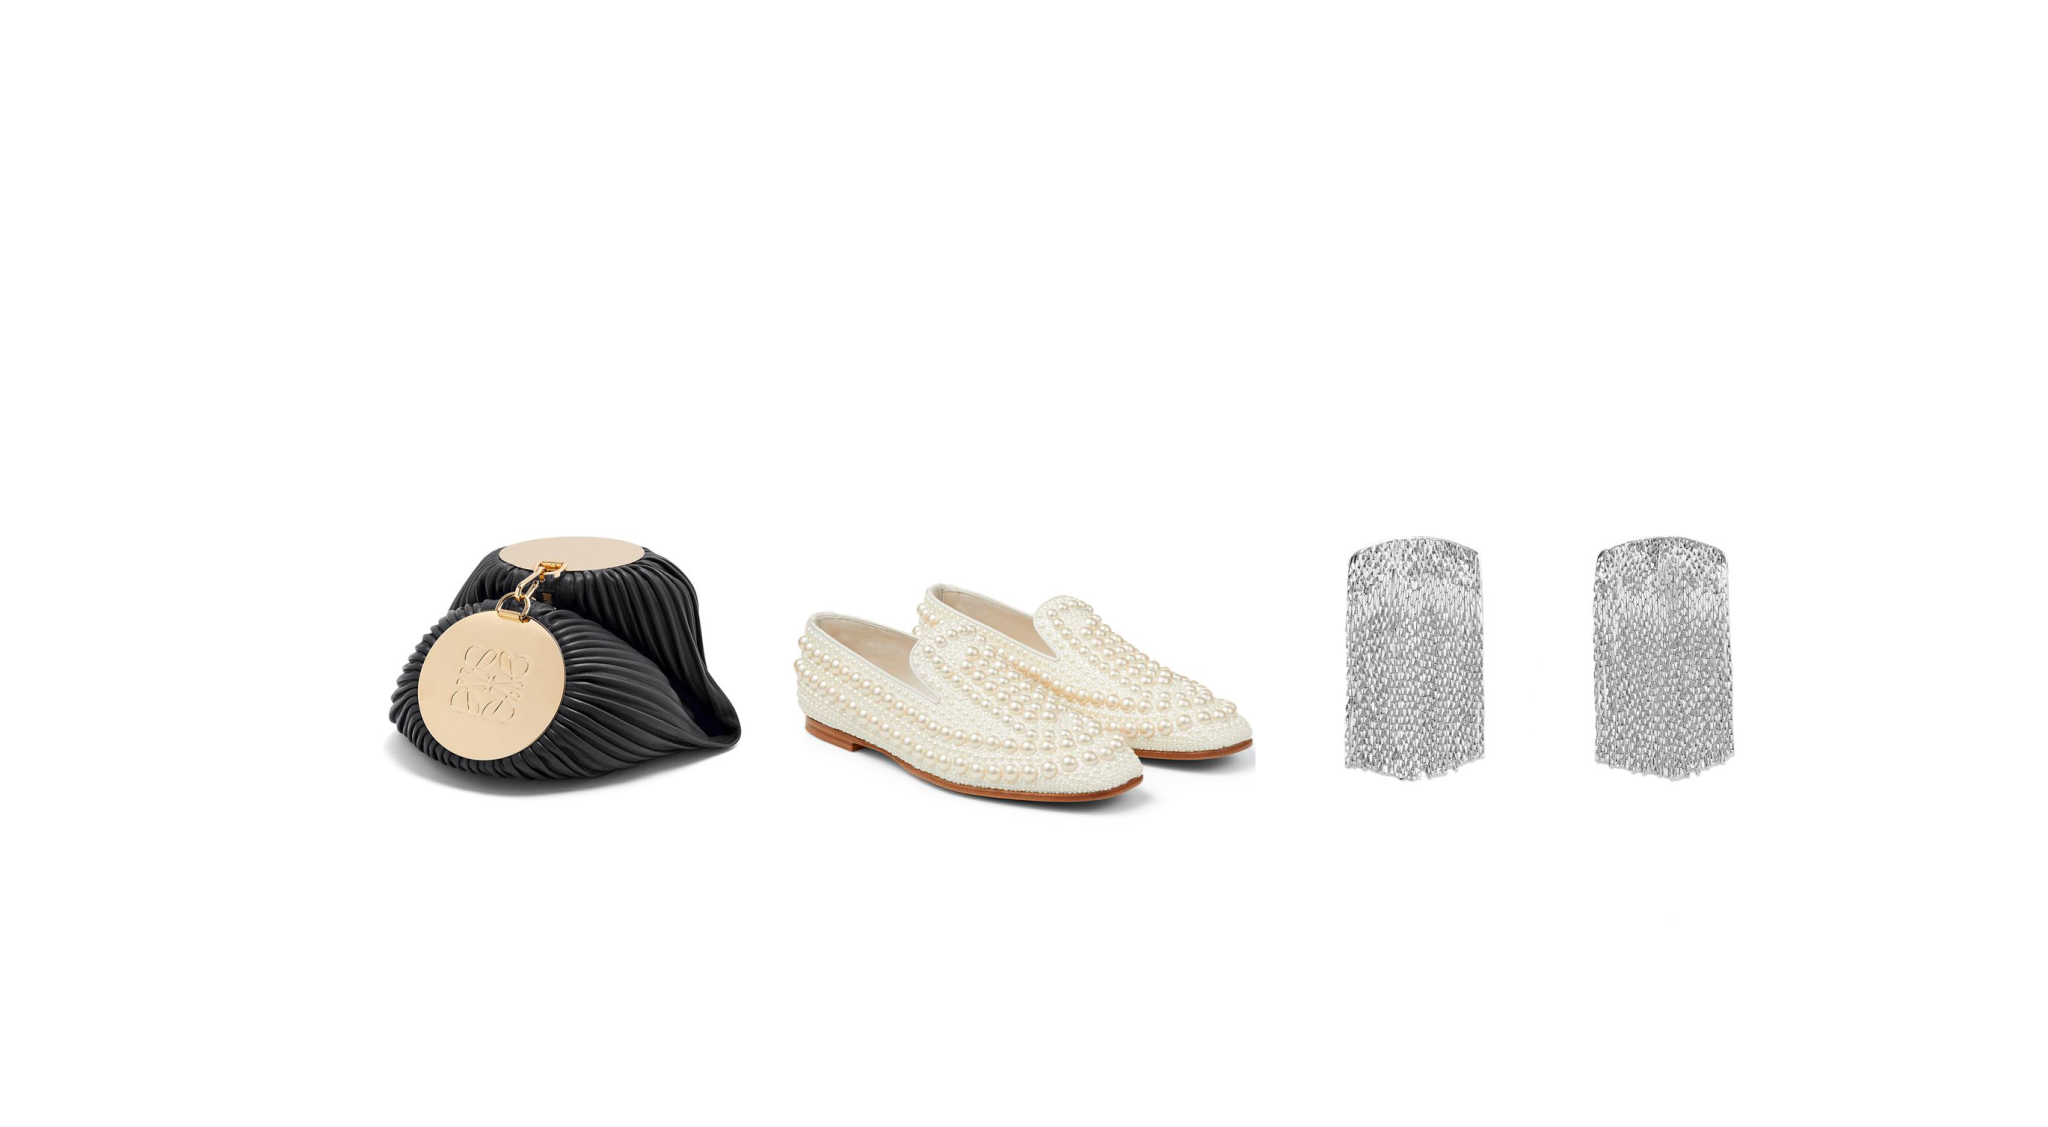 Especial regalos Navidad: zapatos, bolsos y accesorios para acertar como una experta en moda